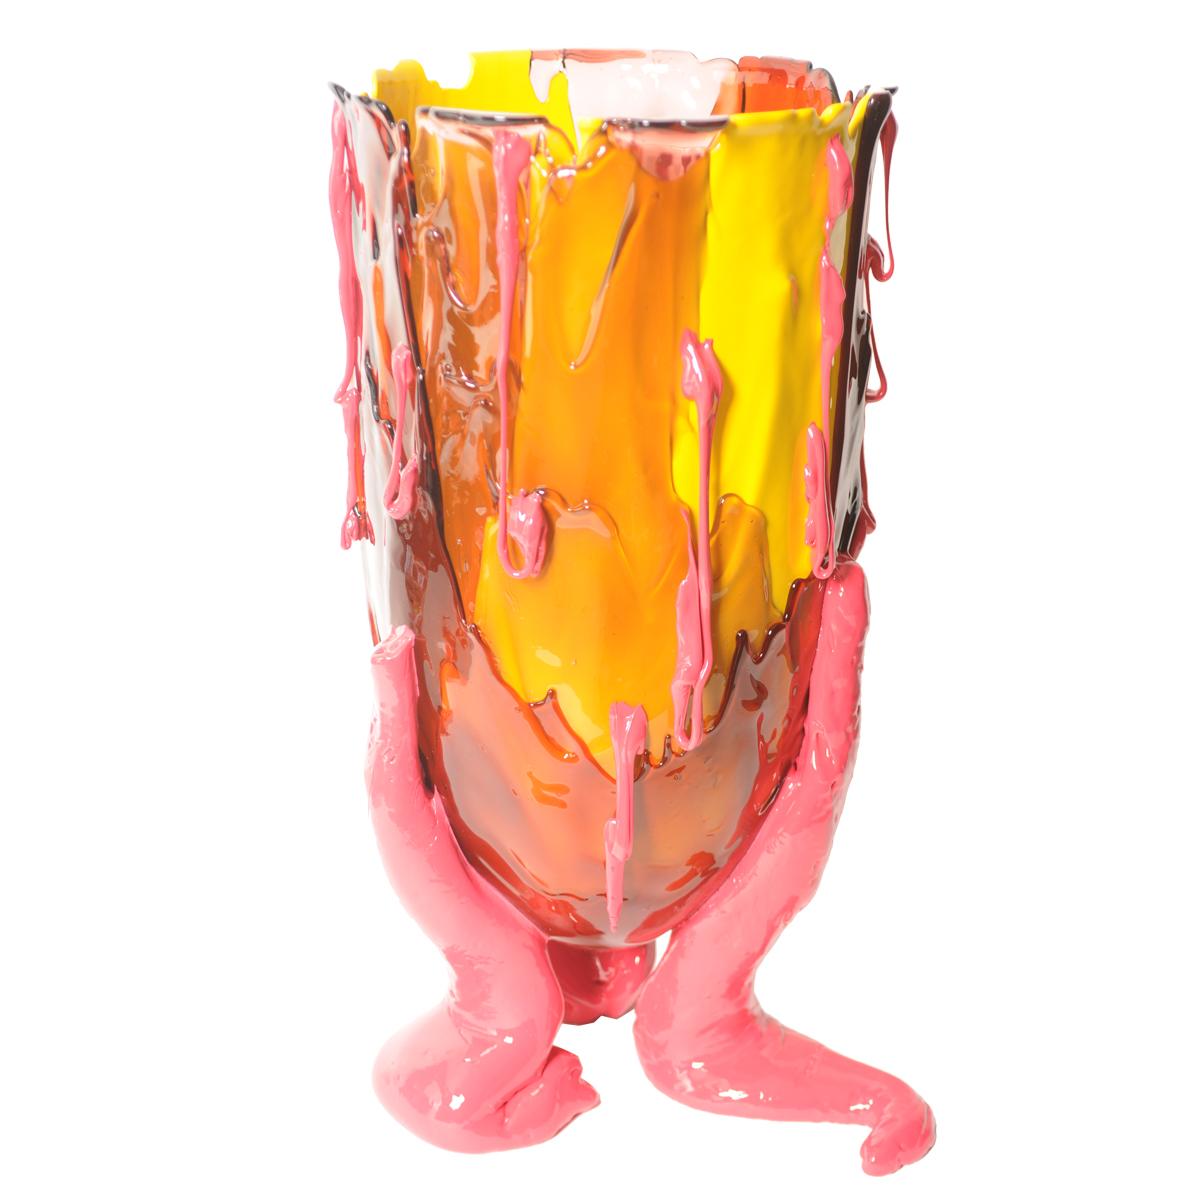 Klare Vase in Sonderfarbe - Mattes warmes Gelb, dunkles Rubinrot, klares Rosa, mattes Fuchsia
Vase aus weichem Harz, entworfen von Gaetano Pesce im Jahr 1995 für die Collection'S Fish Design.

Maße: XL - ø 30cm x H 56cm

Andere Größen